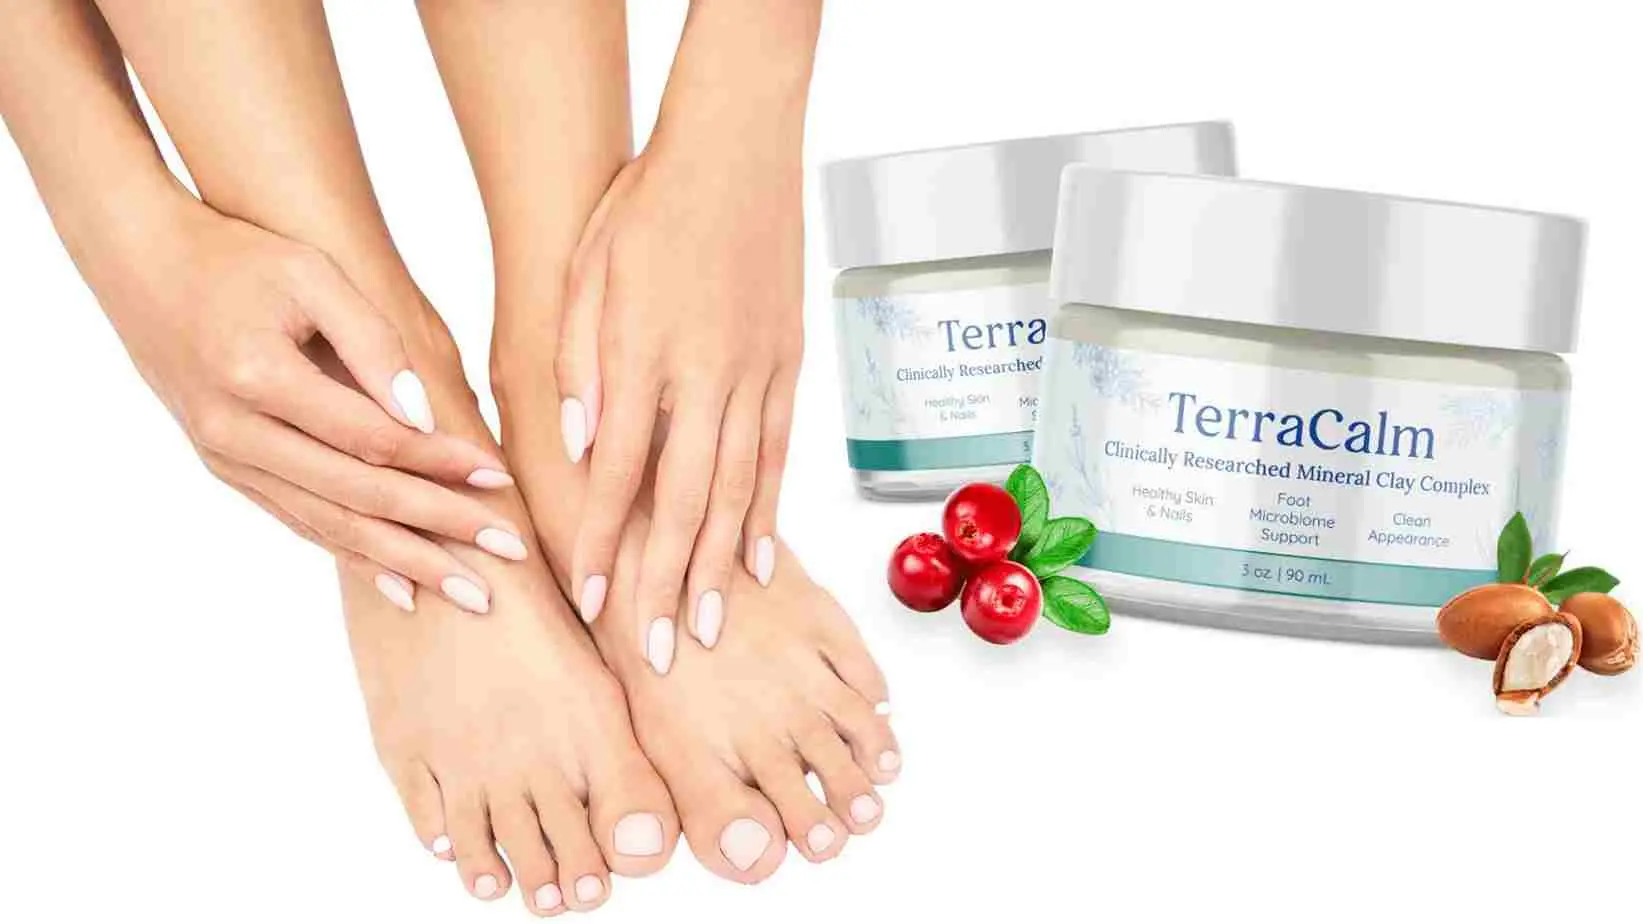 TerraCalm User's Feet